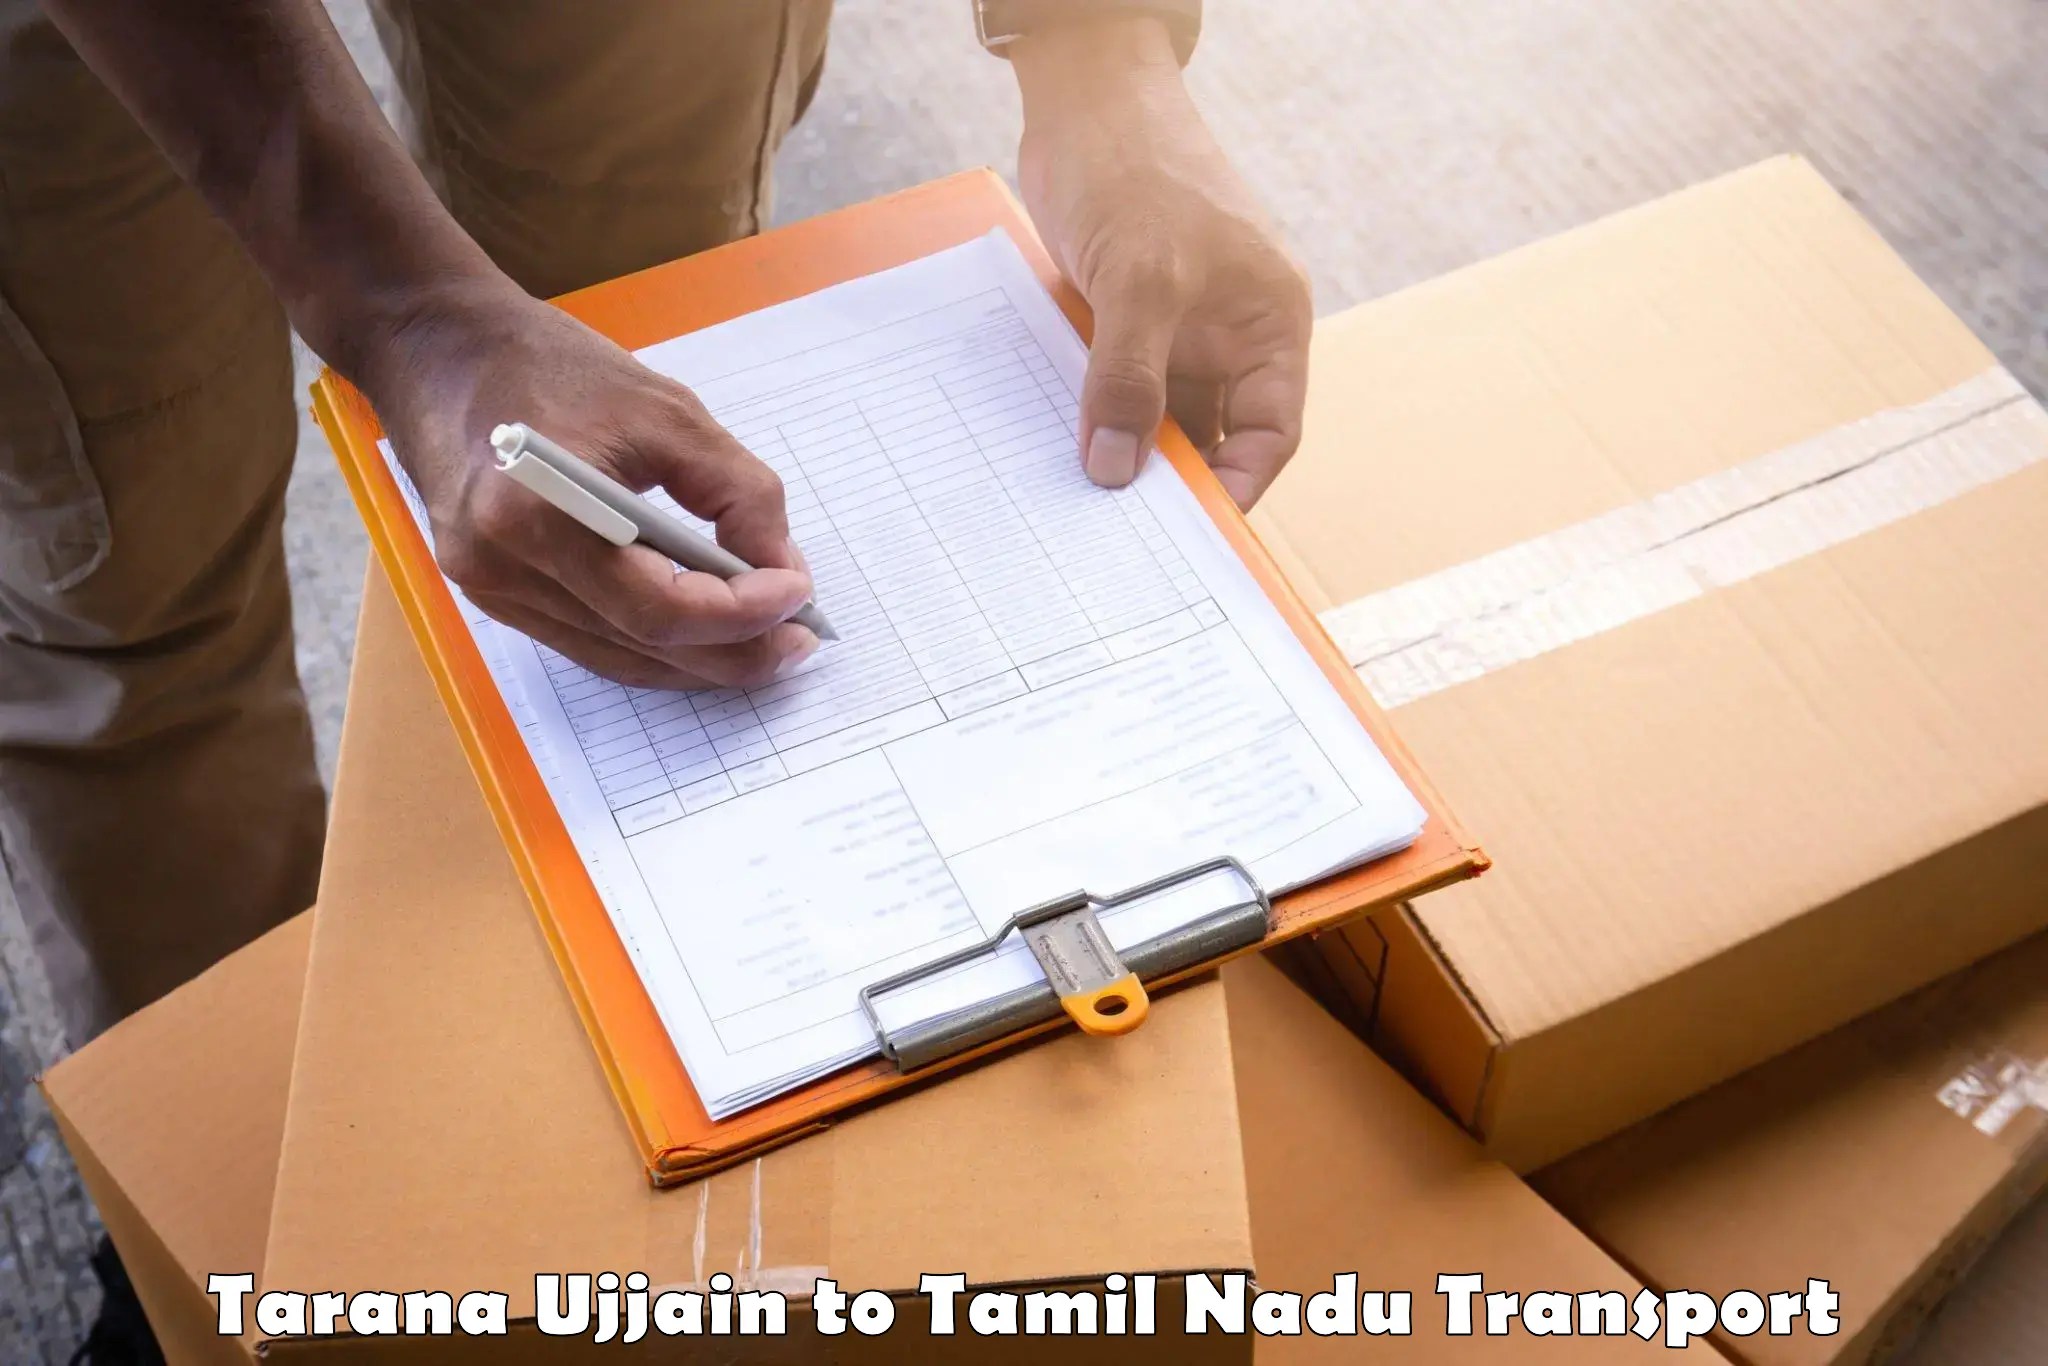 Cargo transport services Tarana Ujjain to Avadi